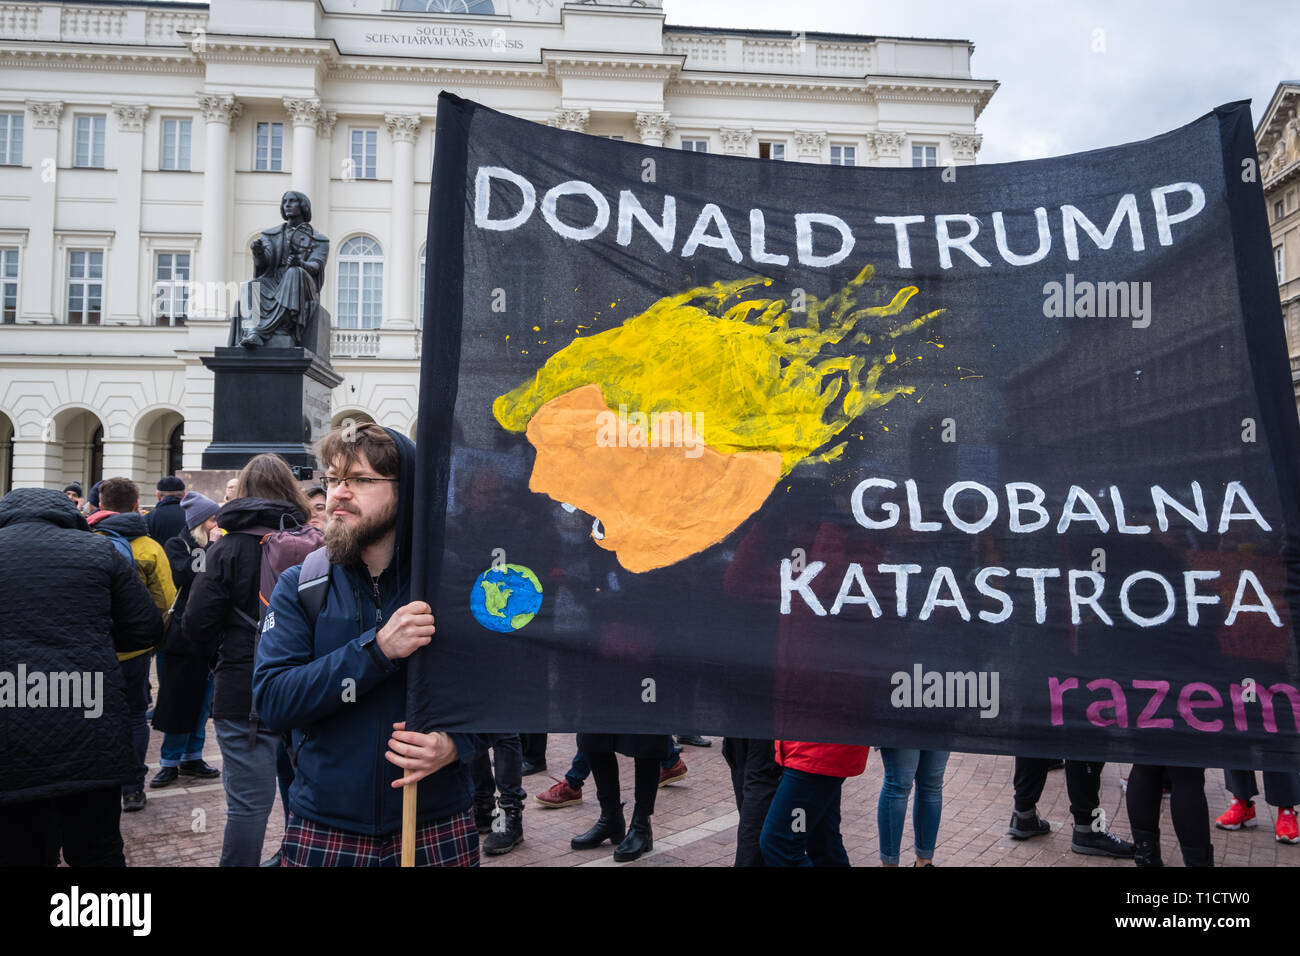 Uno hipster-style protester con anti-Trump 'DDonald Trump - disastro globale' banner durante l'anti-dimostrazione razzista a Varsavia in Polonia. Foto Stock